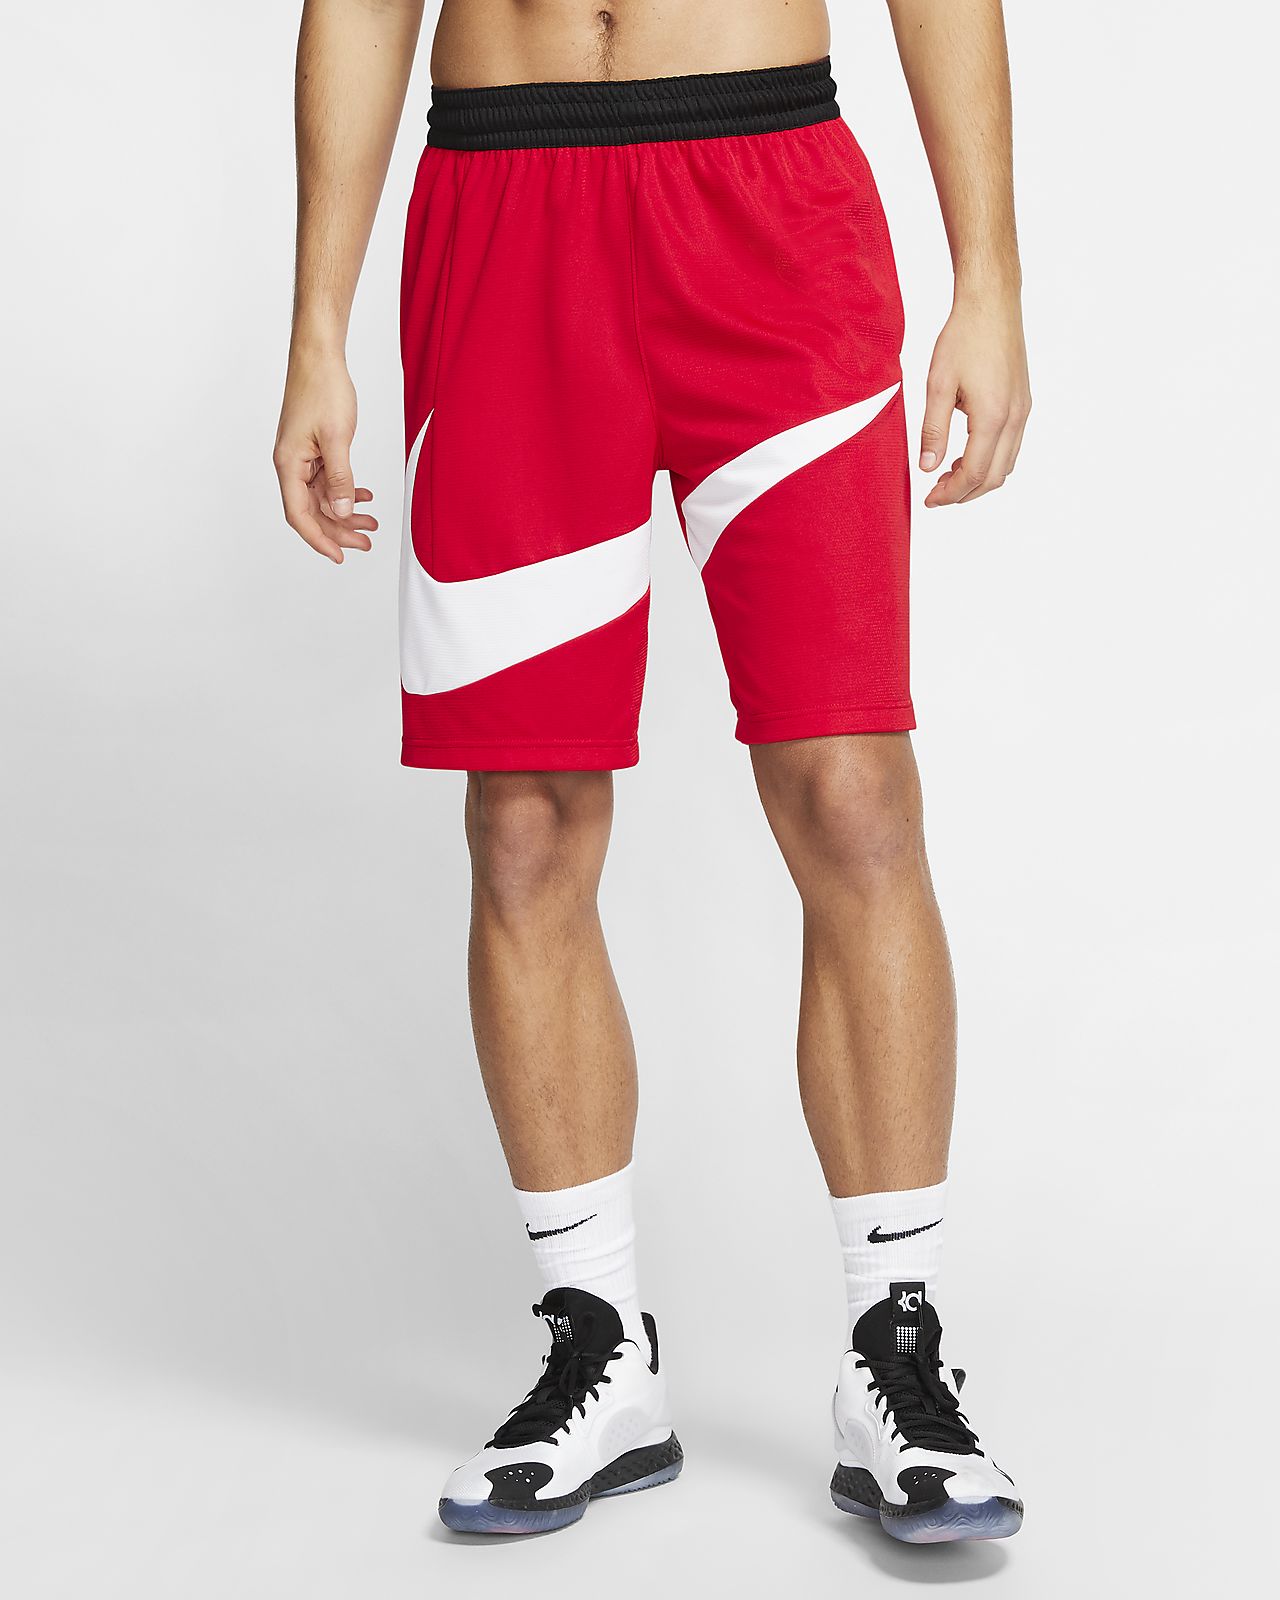 Nike Dri Fit Men S Basketball Shorts Nike Ph